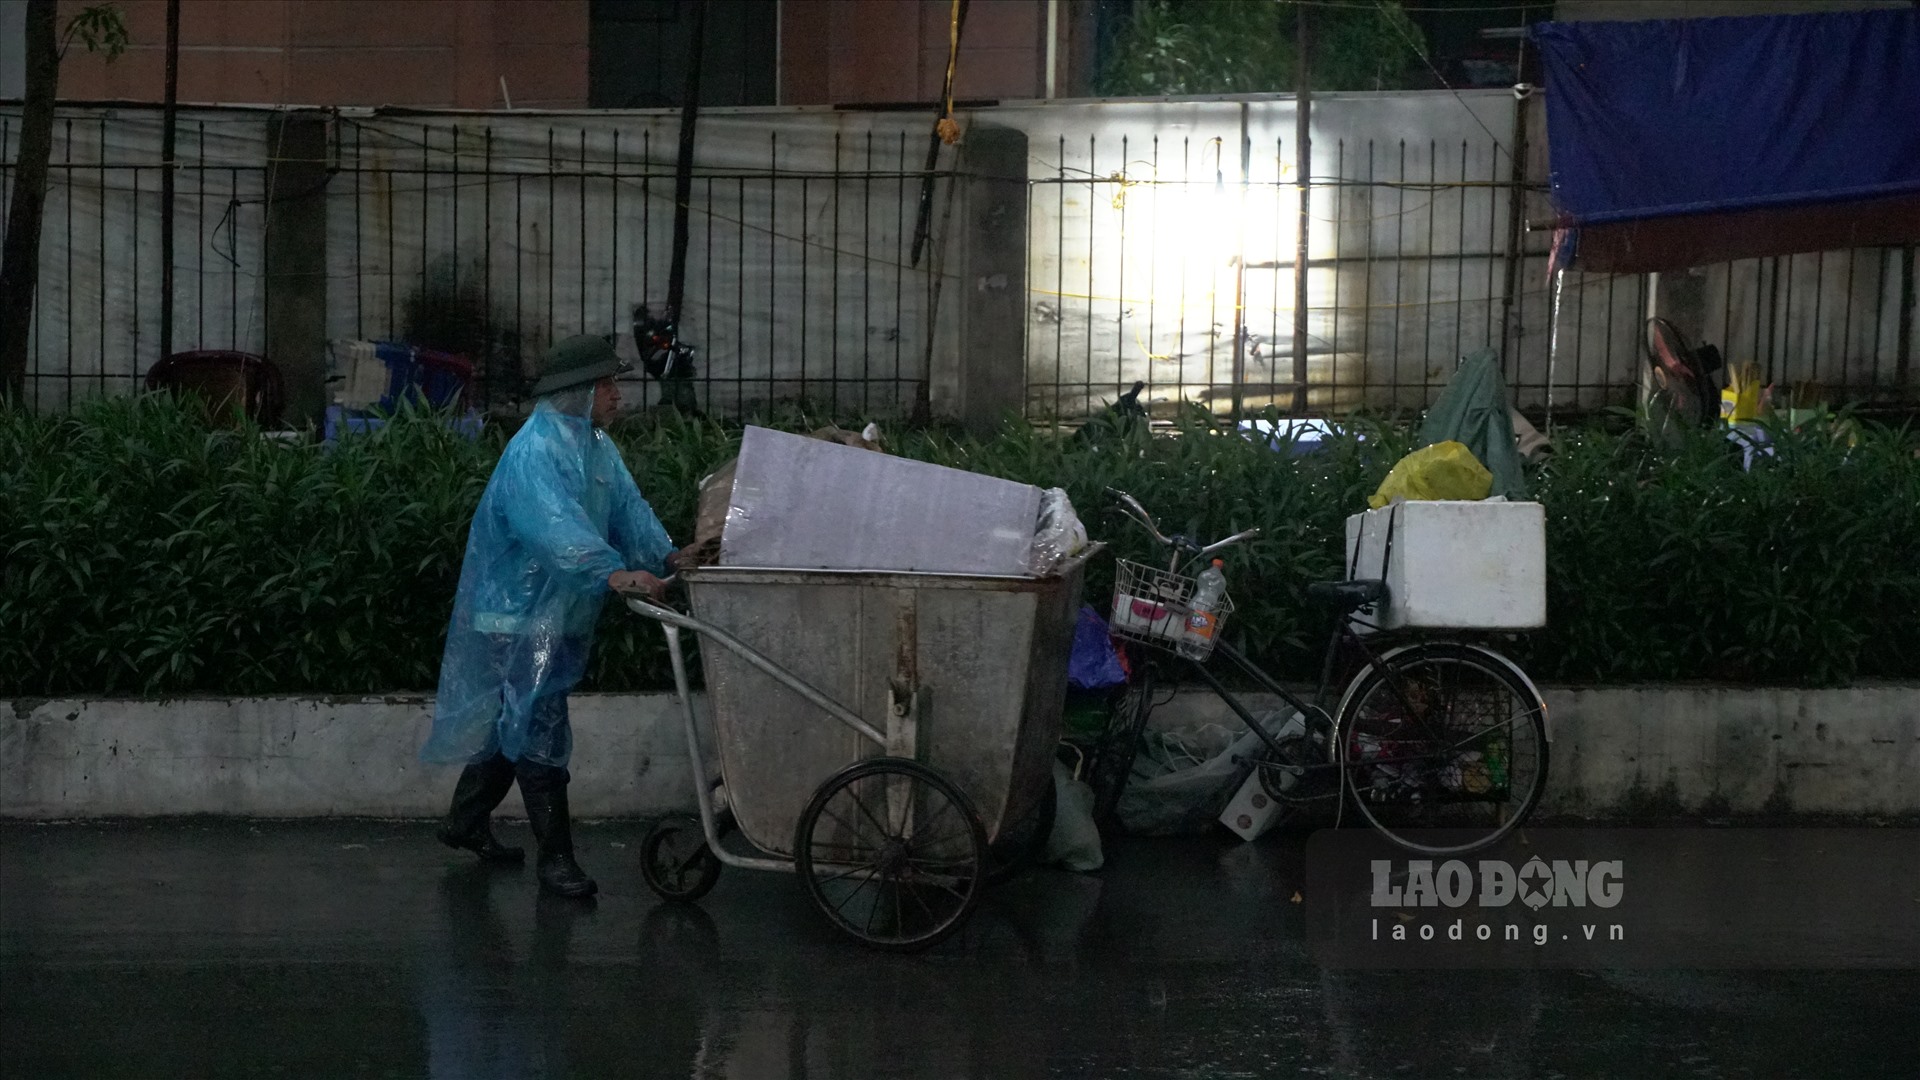 Dù mưa lớn nhưng những công nhân môi trường vẫn tiếp tục công việc của mình.